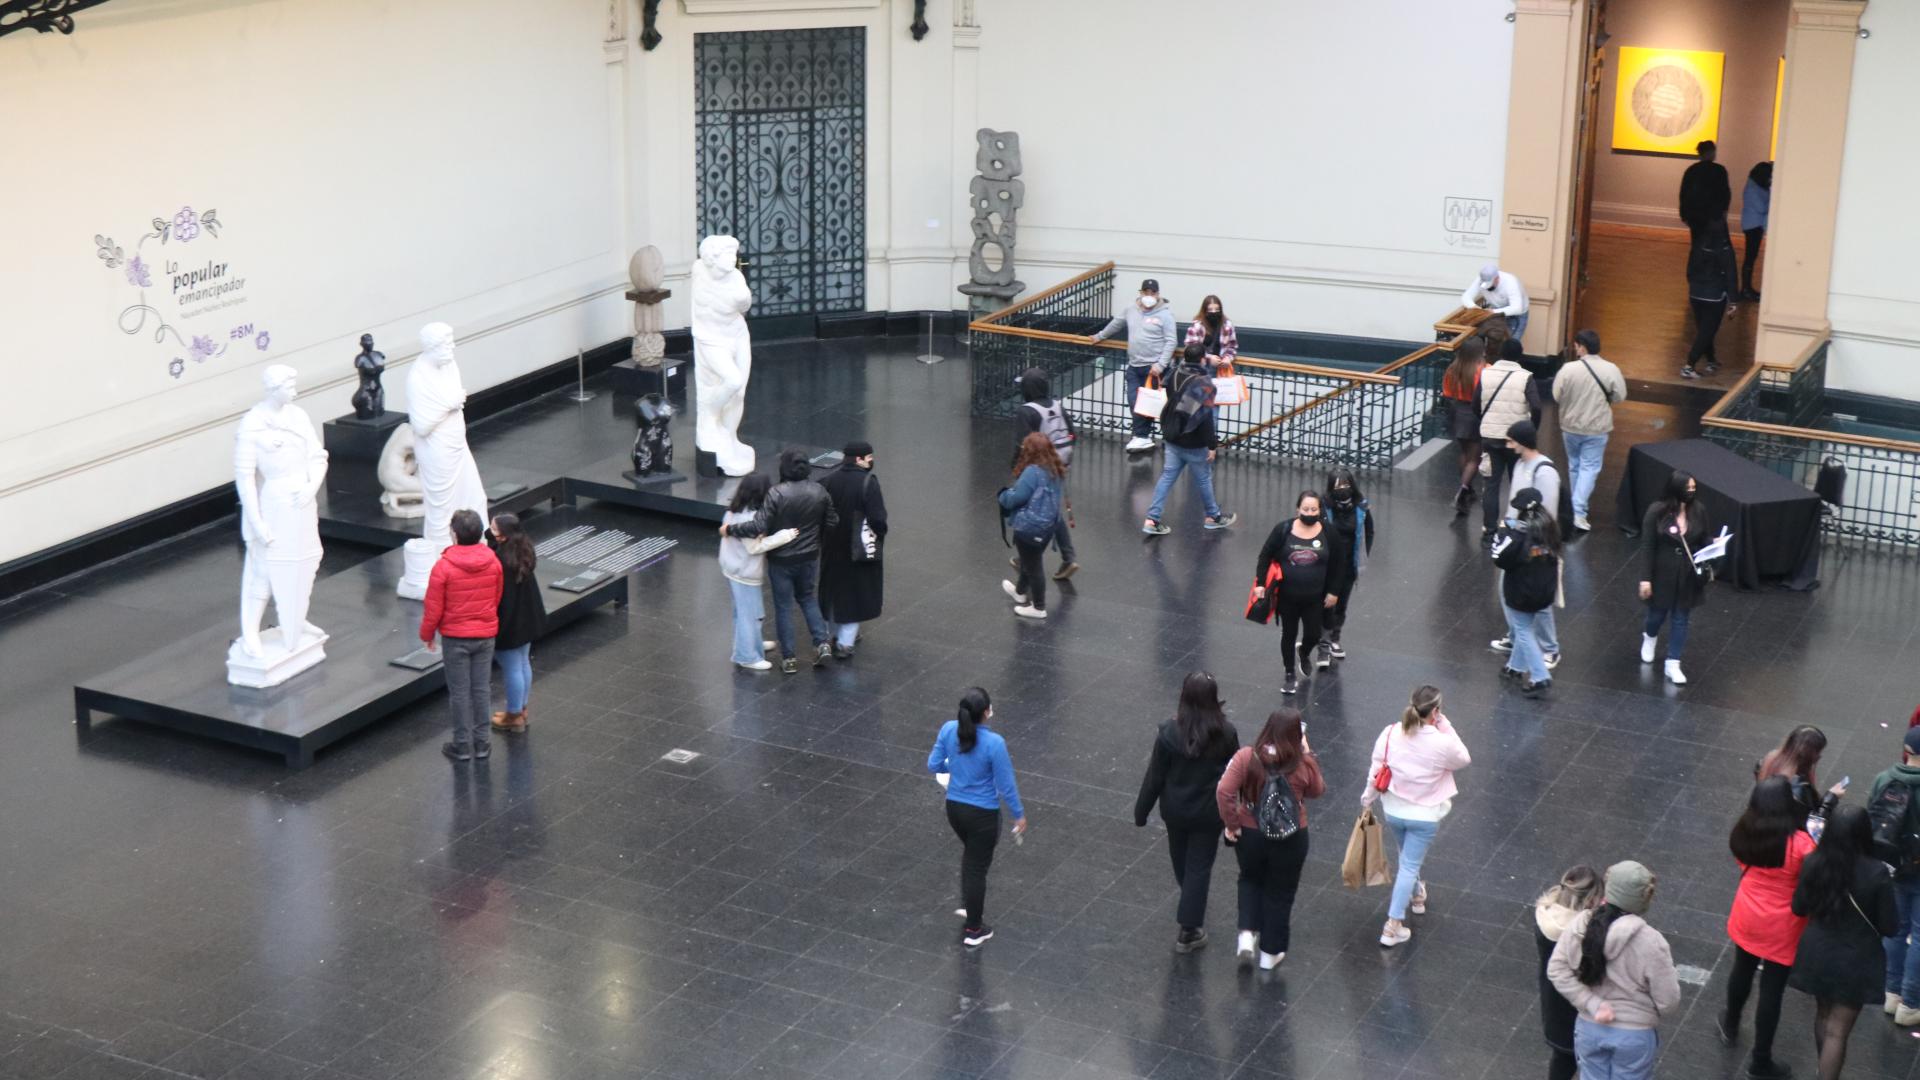 Público en el hall central del Museo de Bellas Artes